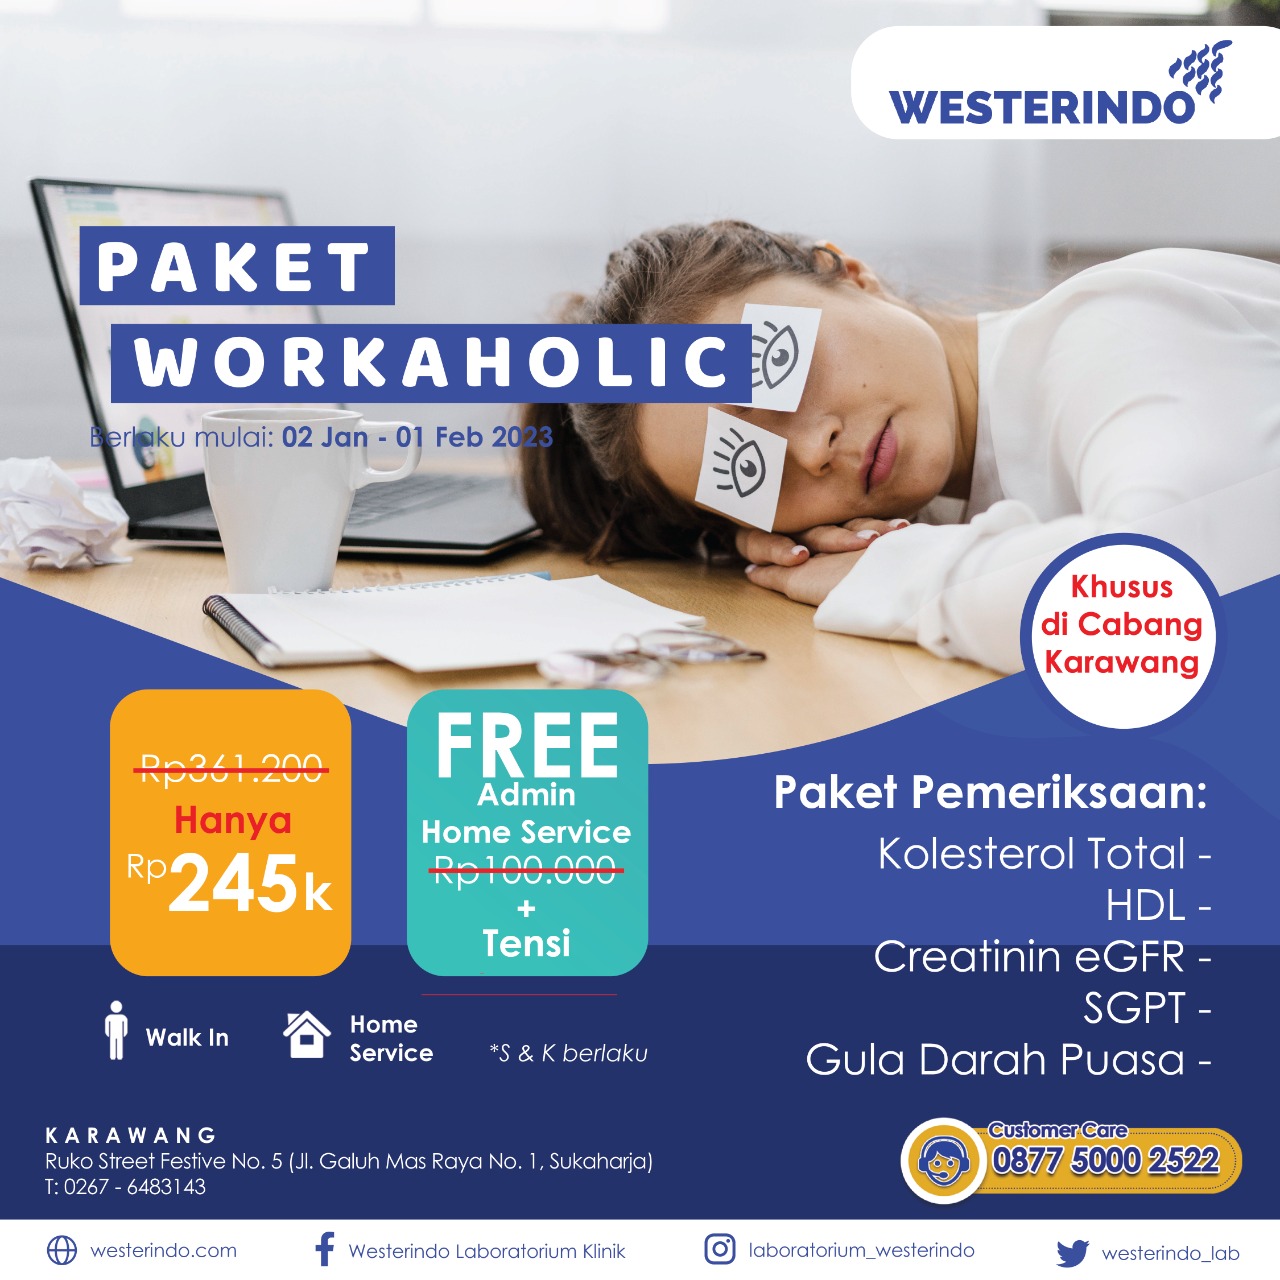 Promo Paket Workaholic Karawang